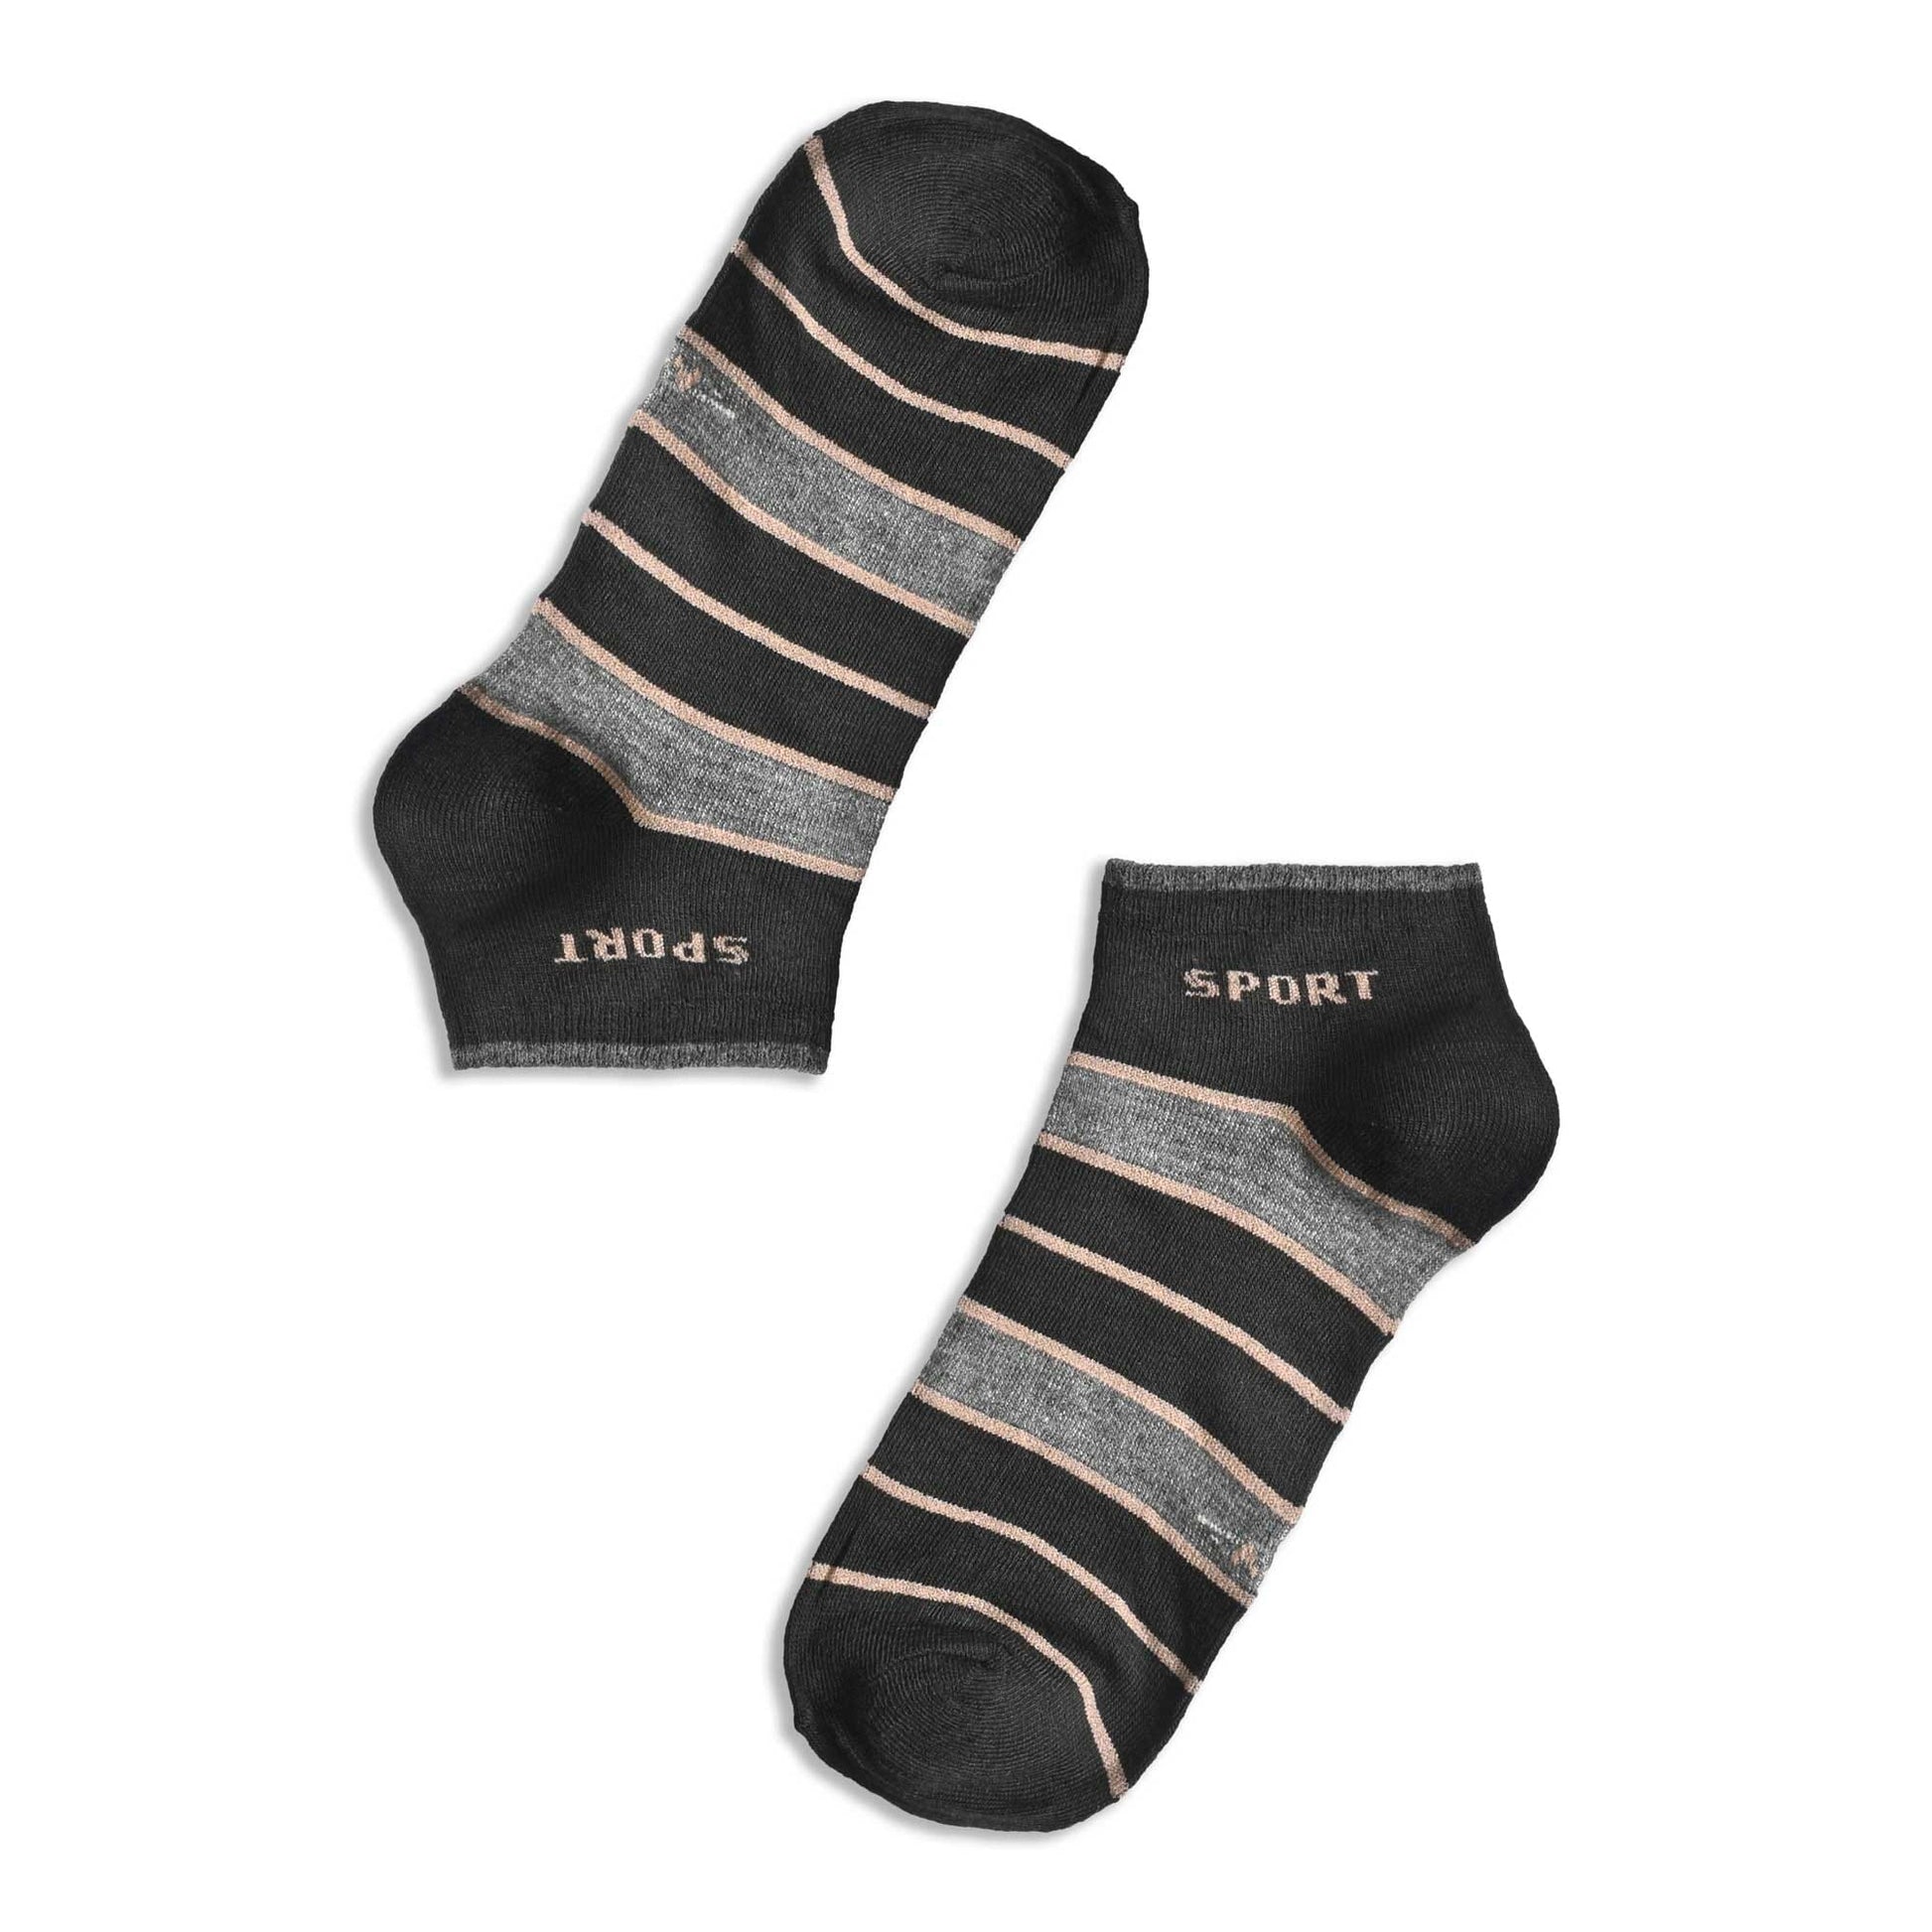 Leija Men's Anklet Socks